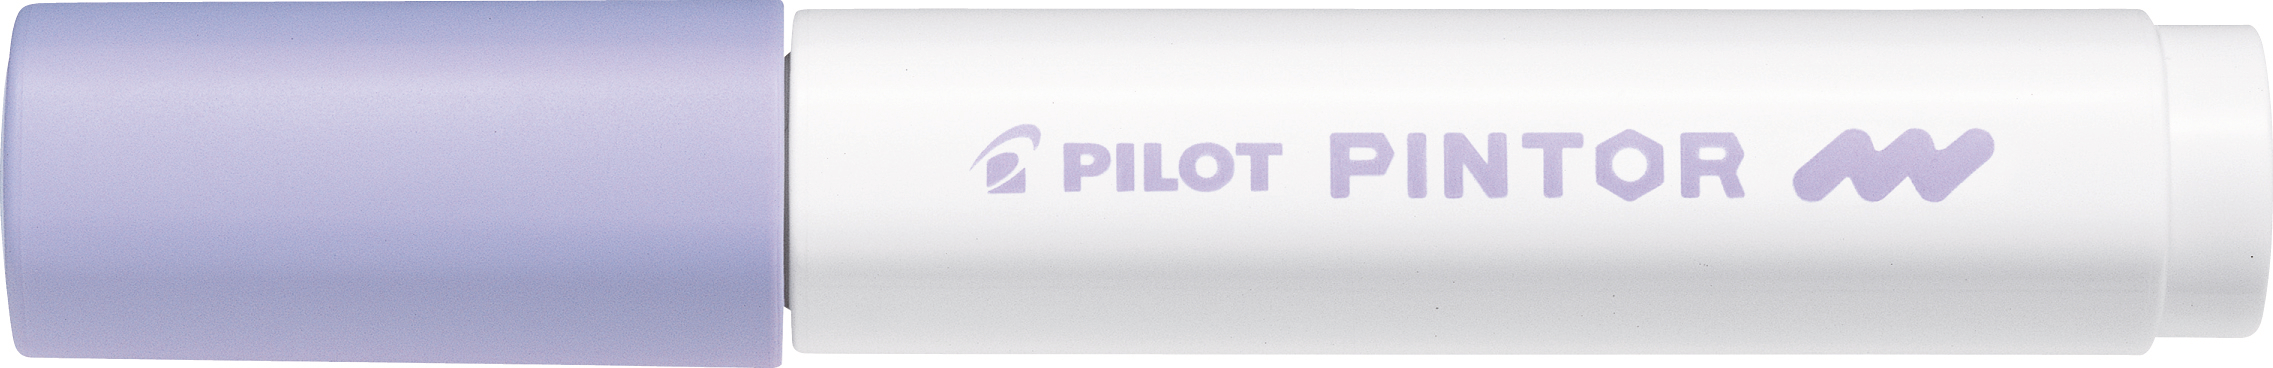 PILOT Marker Pintor M SW-PT-M-PV pastell violet